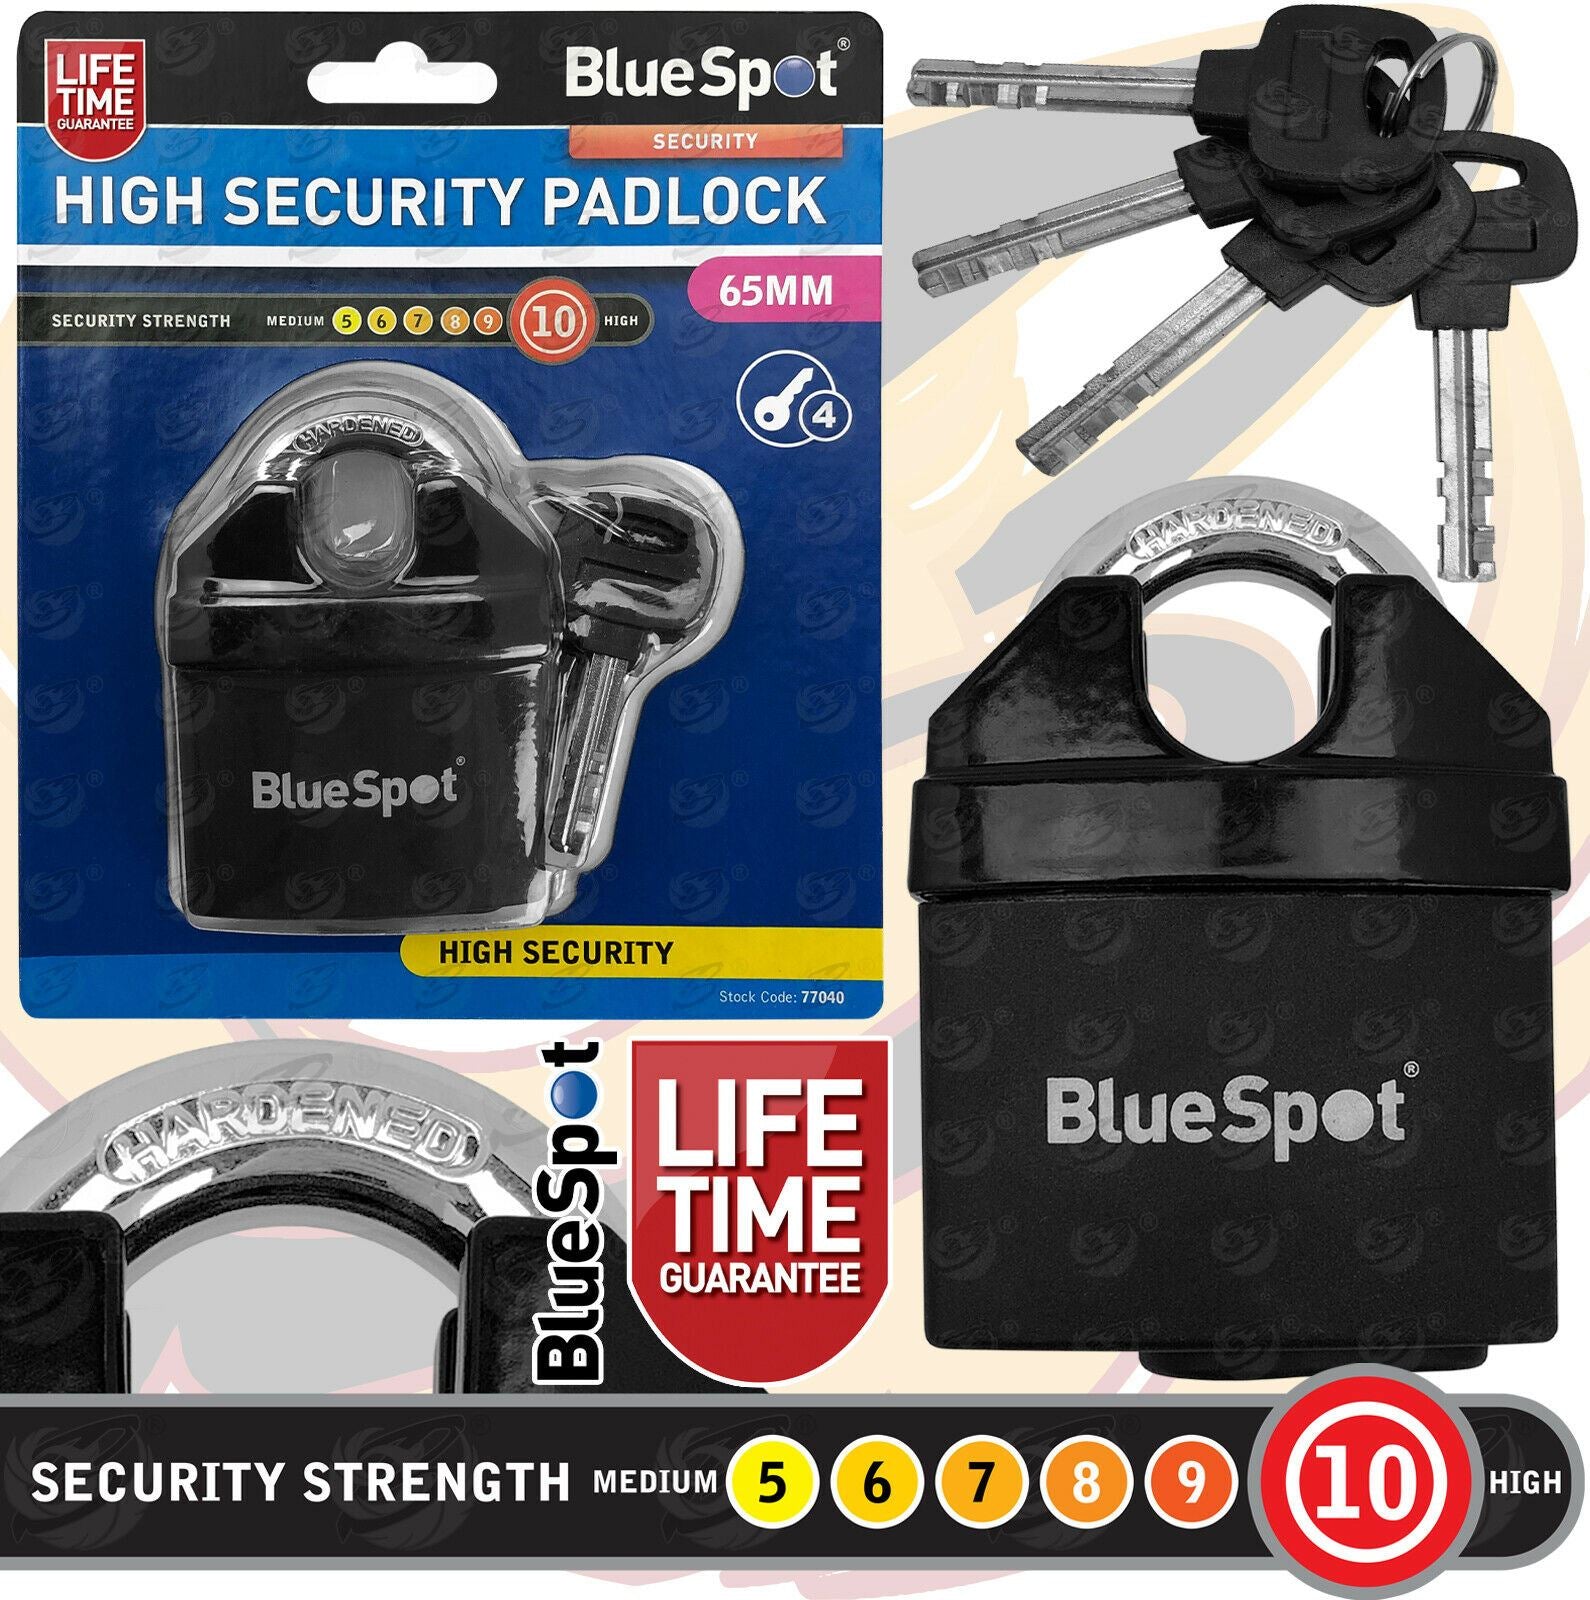 BLUESPOT 65MM HIGH SECURITY PADLOCK